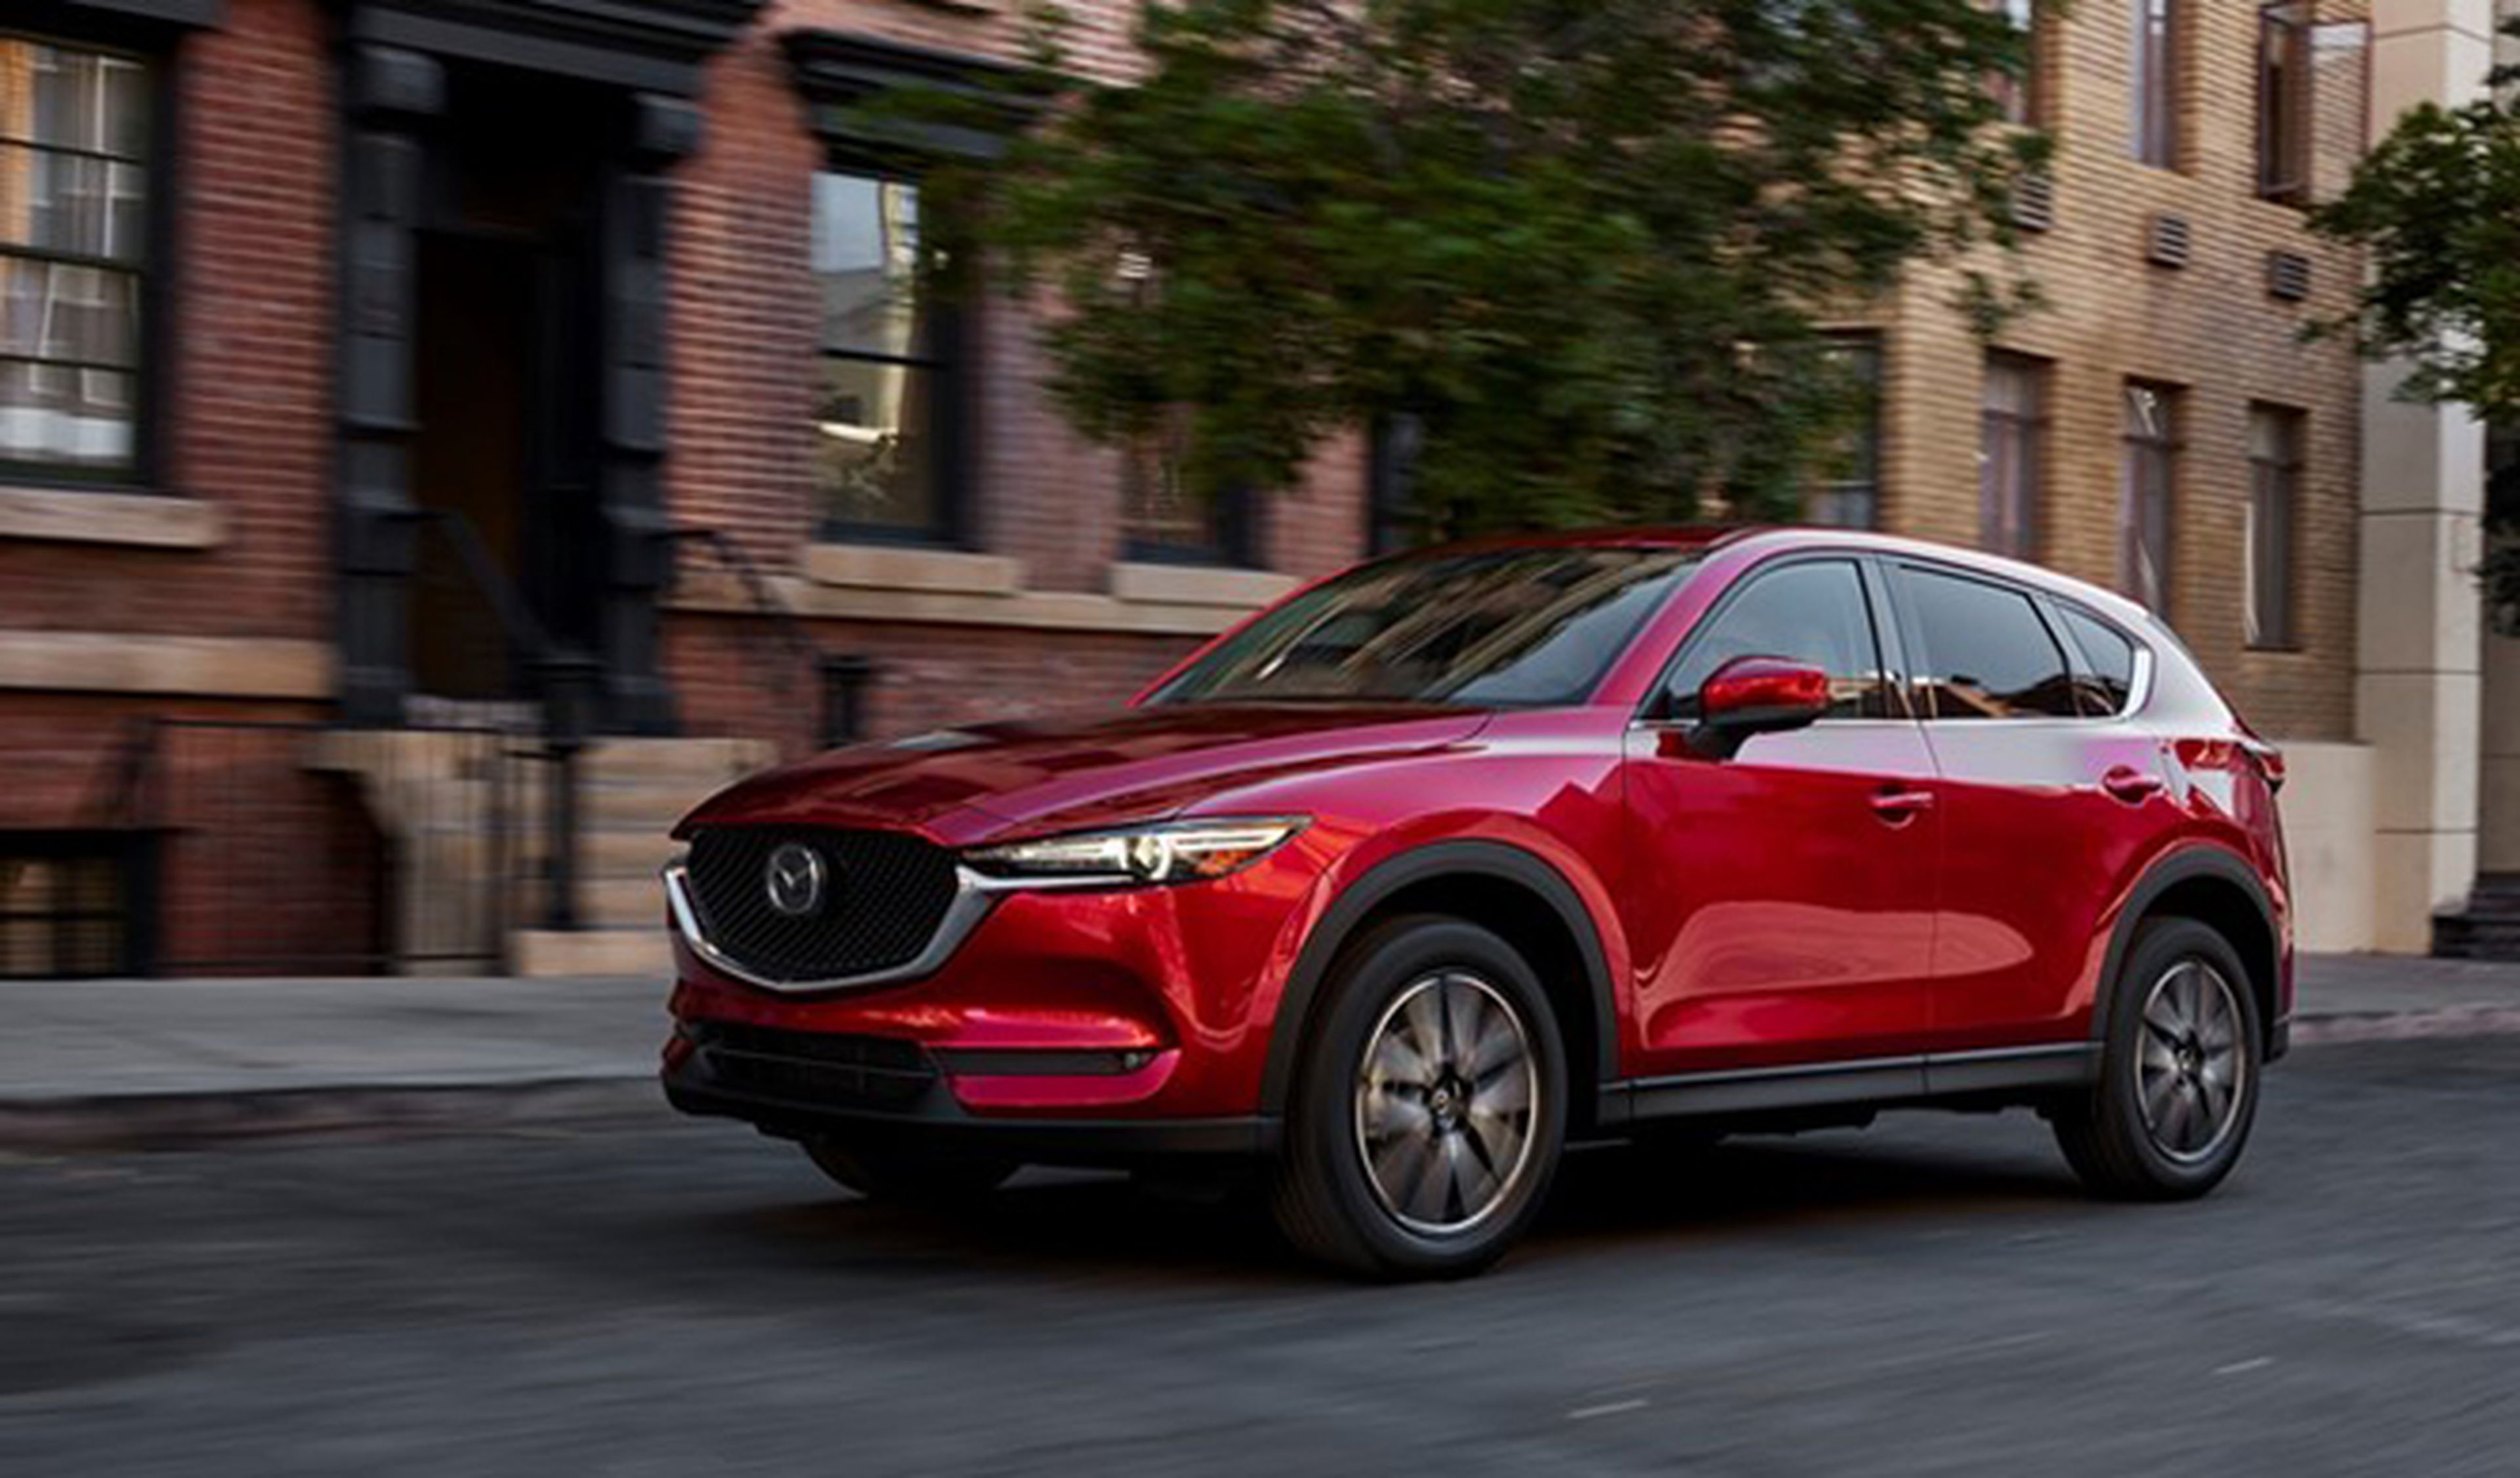 Mazda presentará tres modelos nuevos en el Salón de Ginebra